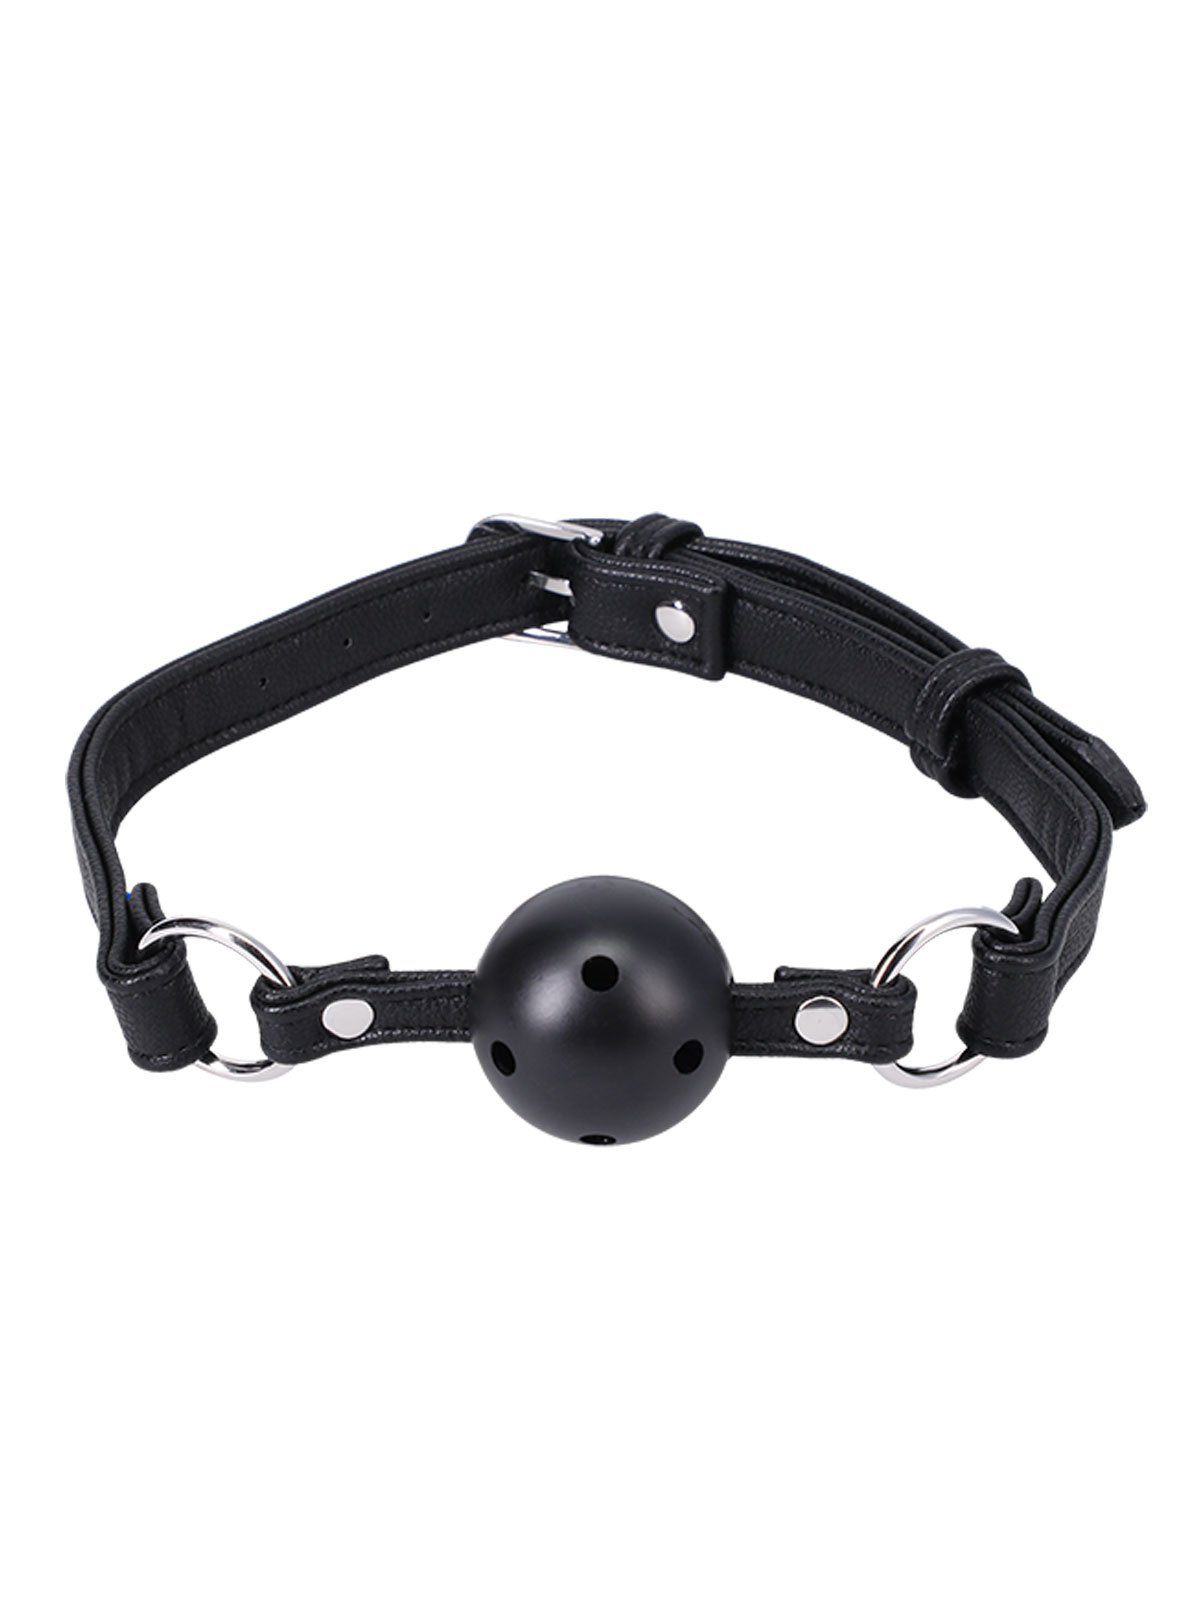 Mundknebel Ball Gag vegan Leather | Black